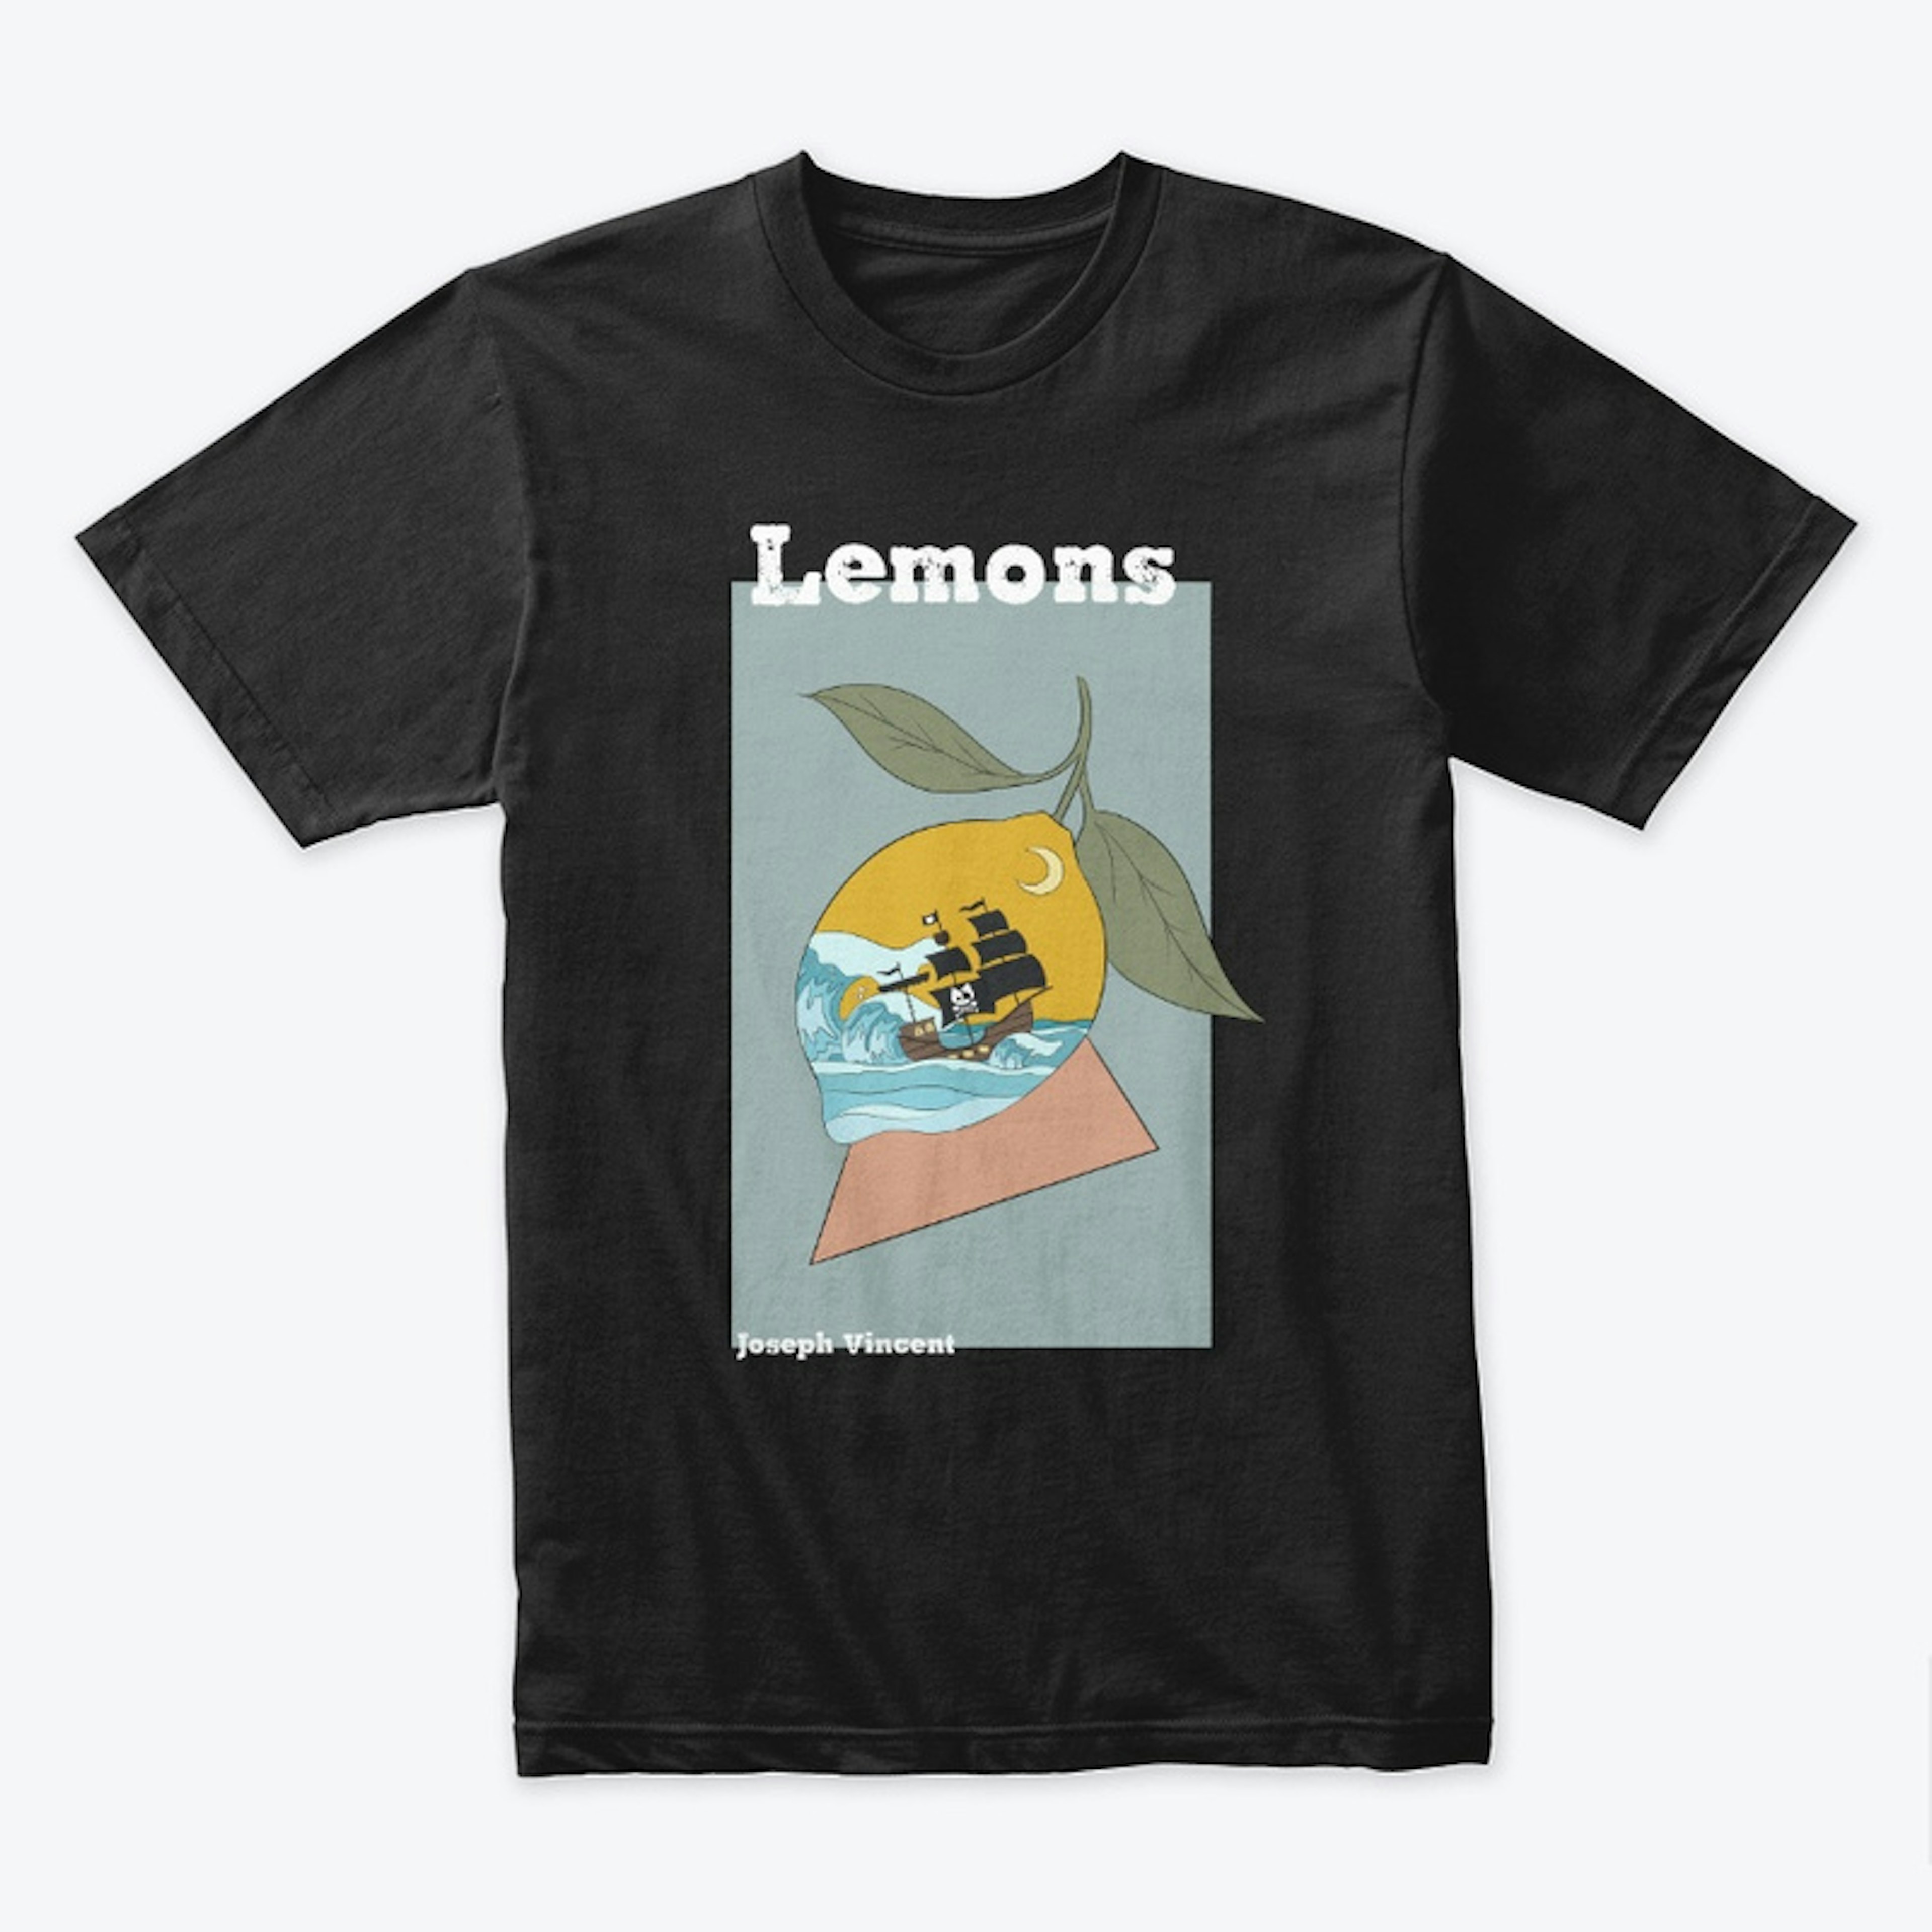 "Lemons" Premium Tee